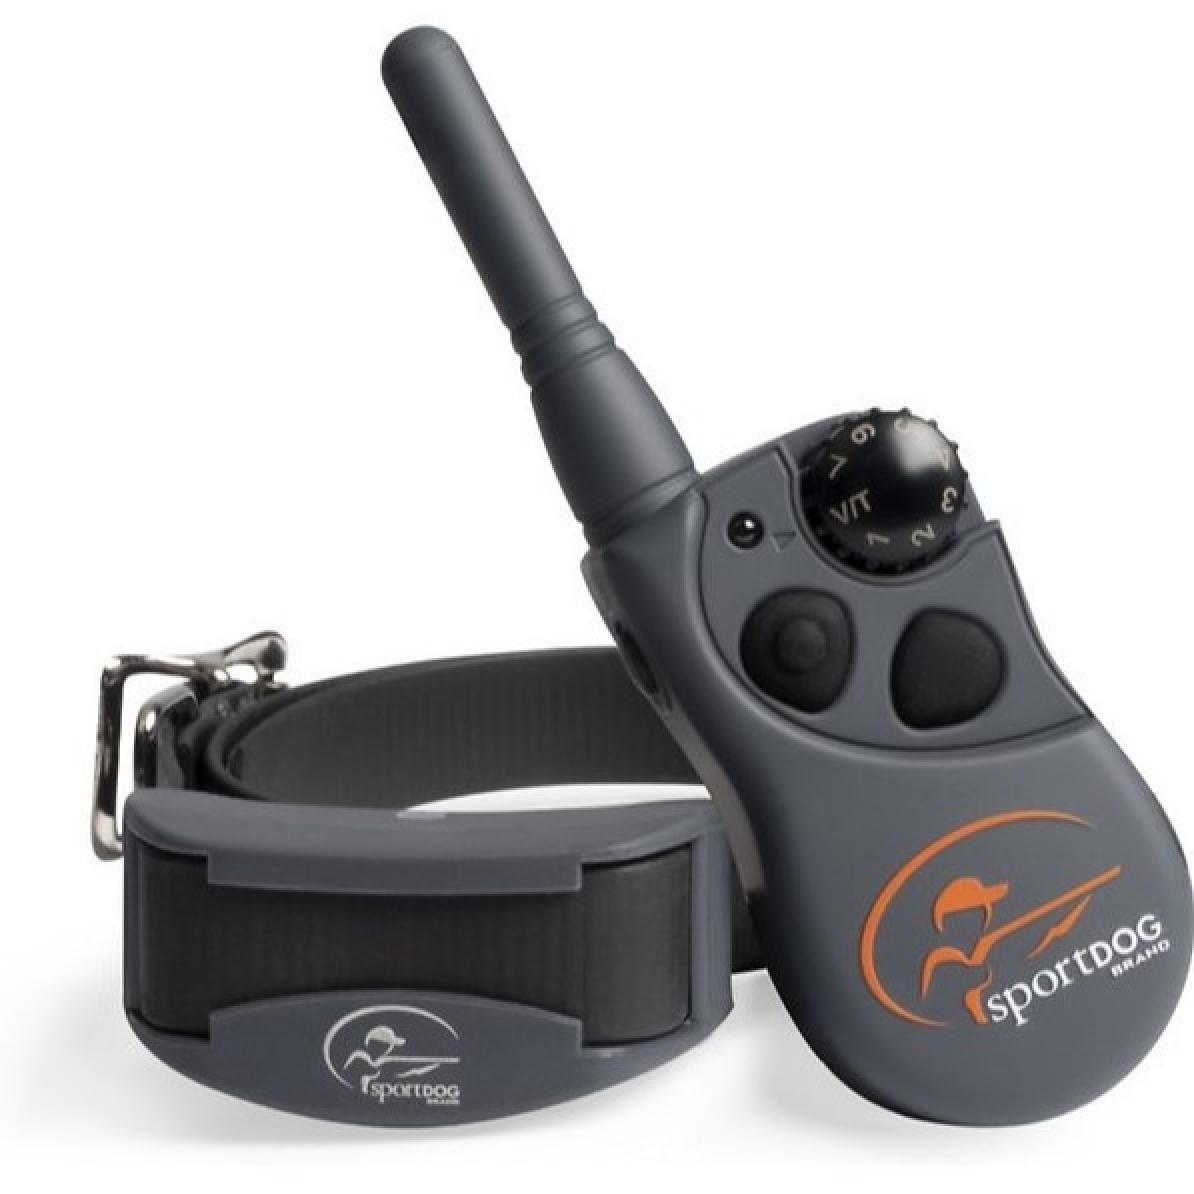 SportDOG FieldTrainer 425X Remote Trainer Dog Collar